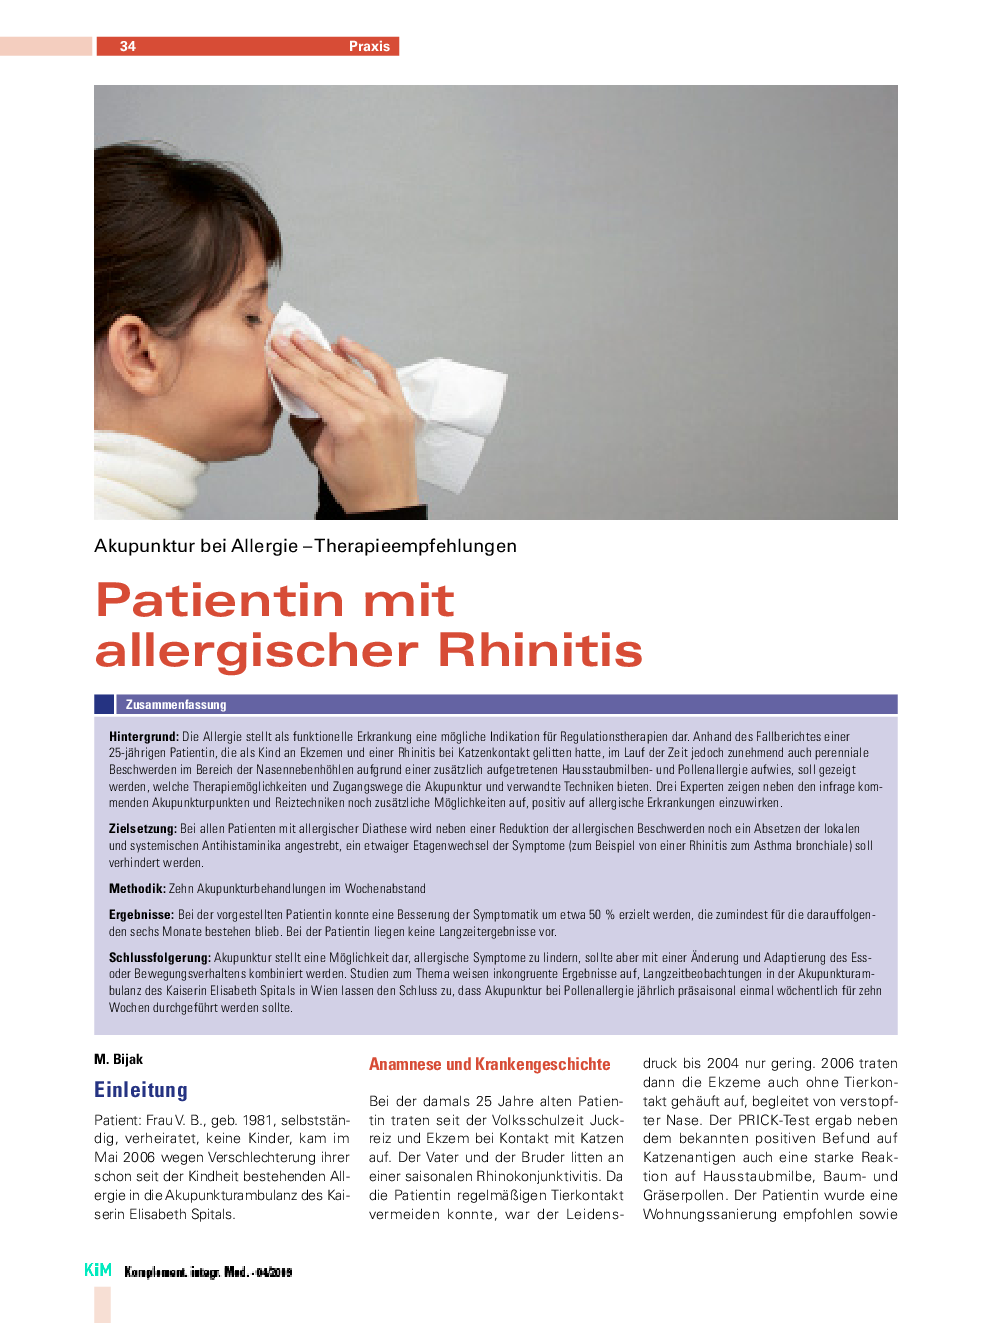 Patientin mit allergischer Rhinitis